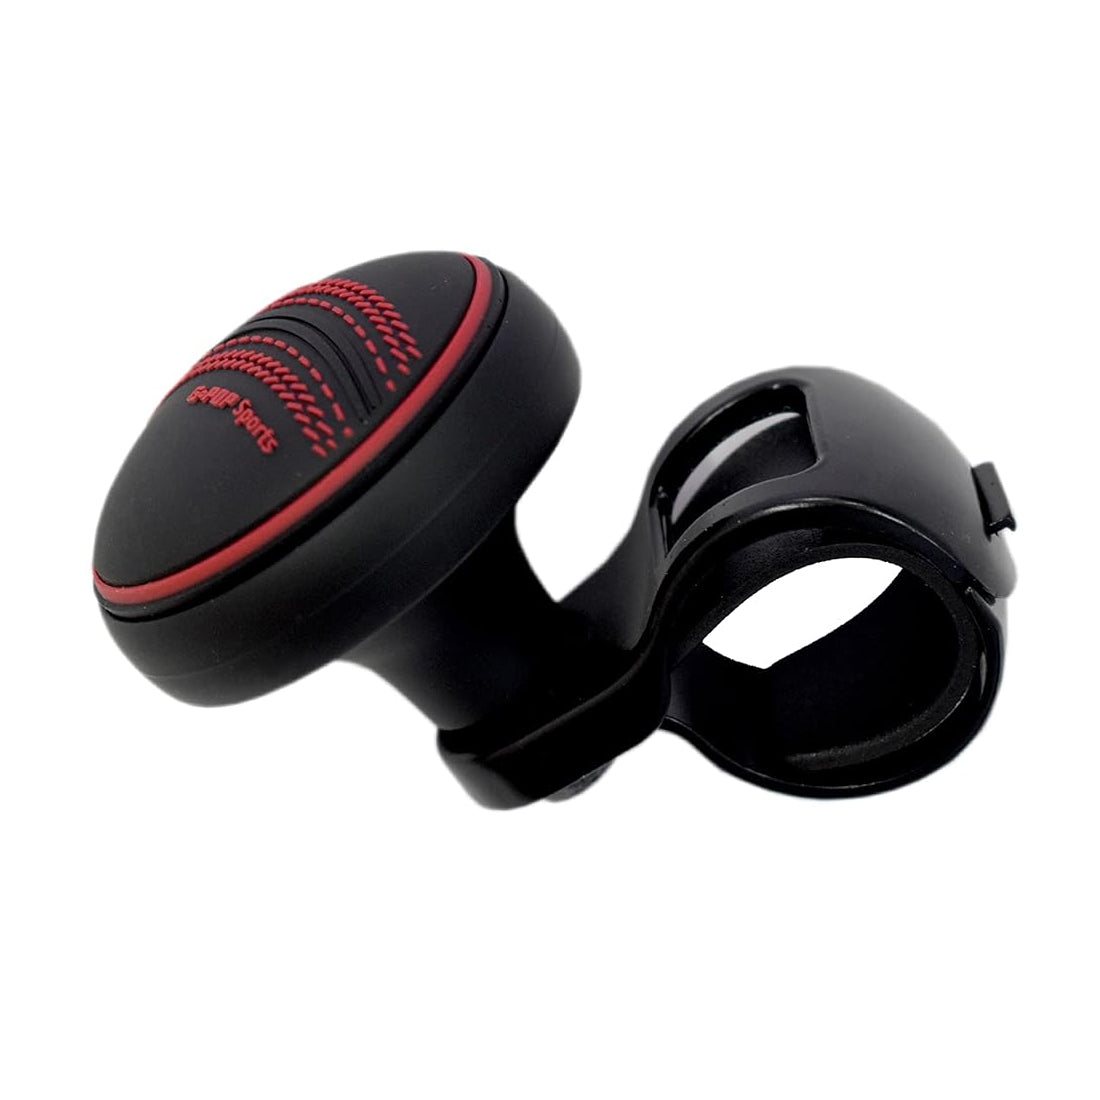 Onwheel Universal Car'S G-Pop Sports Power Handle Steering Wheel Spinner Knob In Black